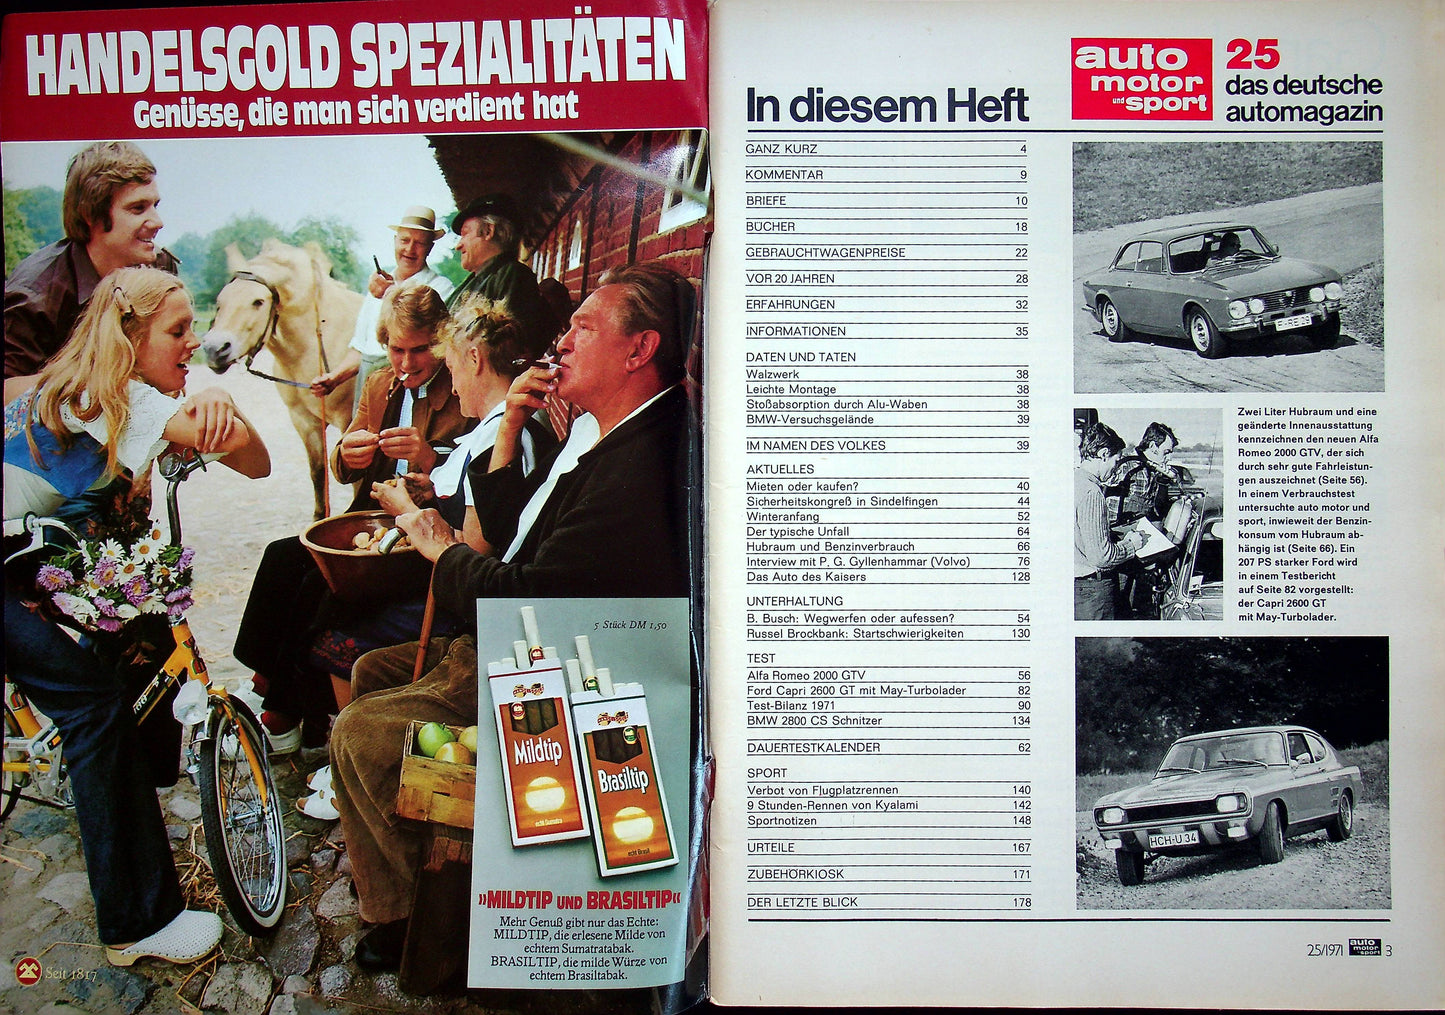 Auto Motor und Sport 25/1971